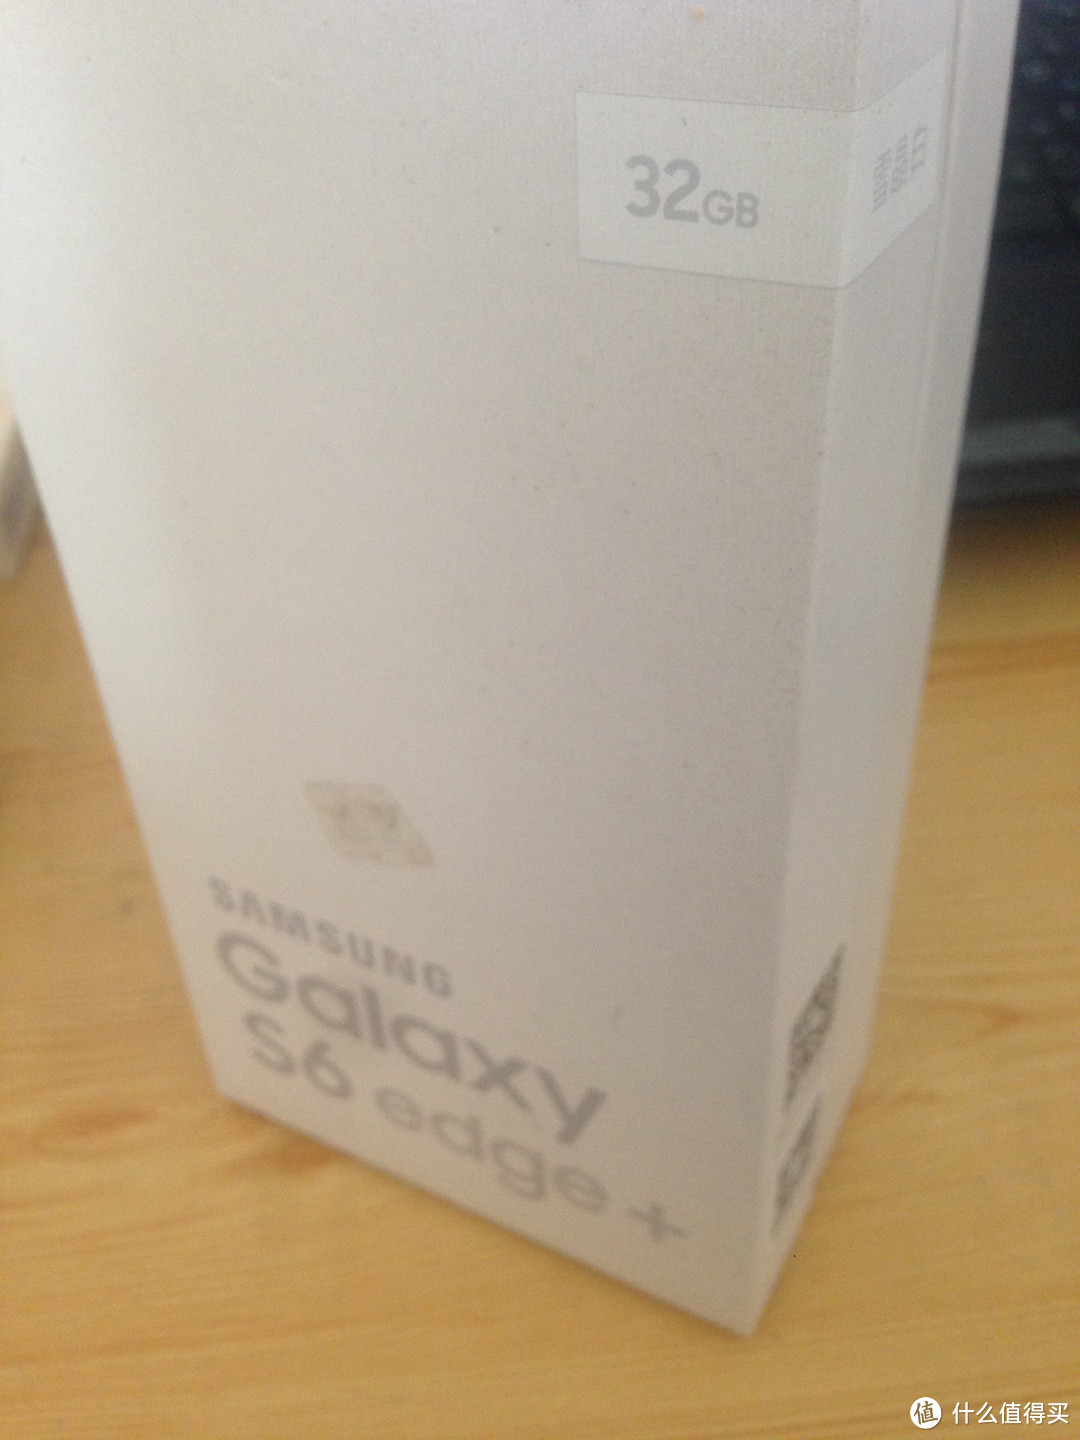 比黑夜还诱惑 —SAMSUNG 三星 Galaxy S6 edge+ 手机 开箱